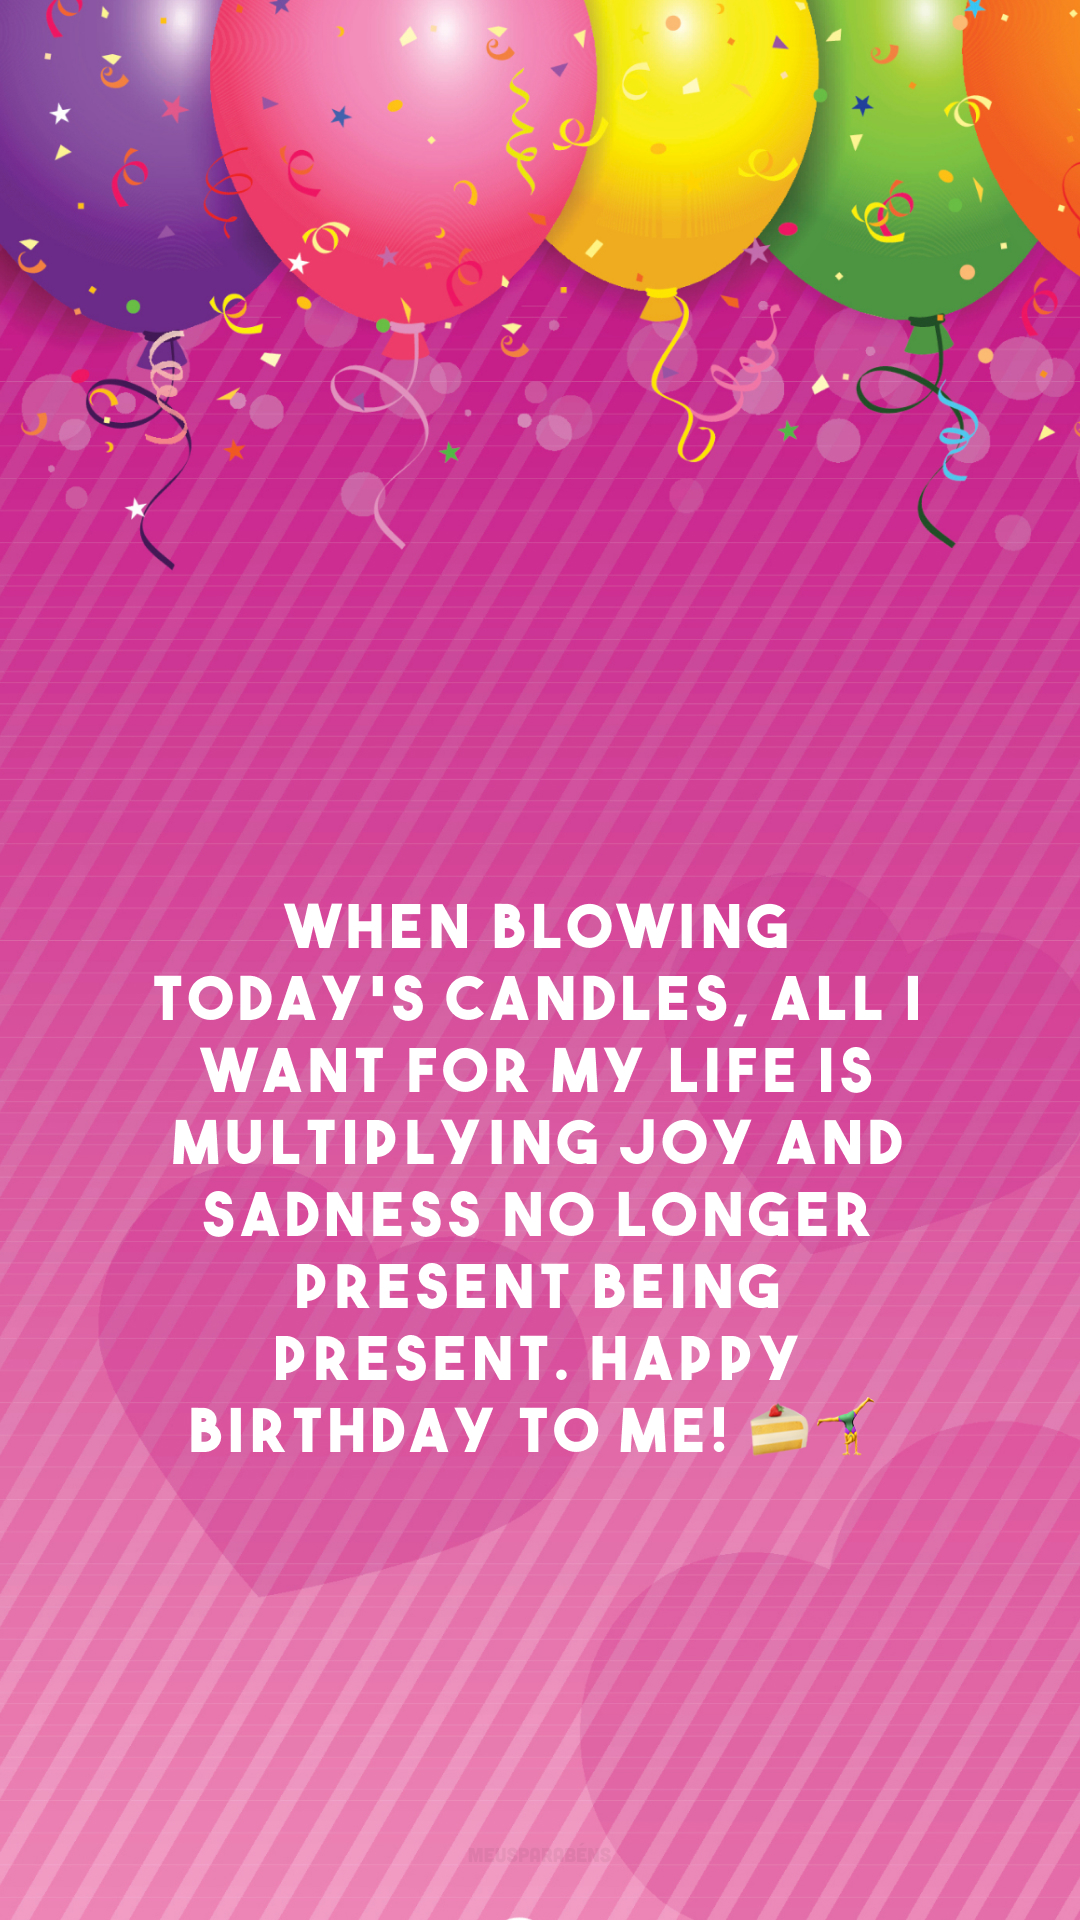 When blowing today's candles, all I want for my life is multiplying joy and sadness no longer present being present. Happy birthday to me! 🍰🤸‍♀️

<p>(Ao soprar as velas de hoje, tudo o que eu desejo para minha vida é que a alegria se multiplique e a tristeza não esteja mais presente. Feliz aniversário pra mim!)<p>